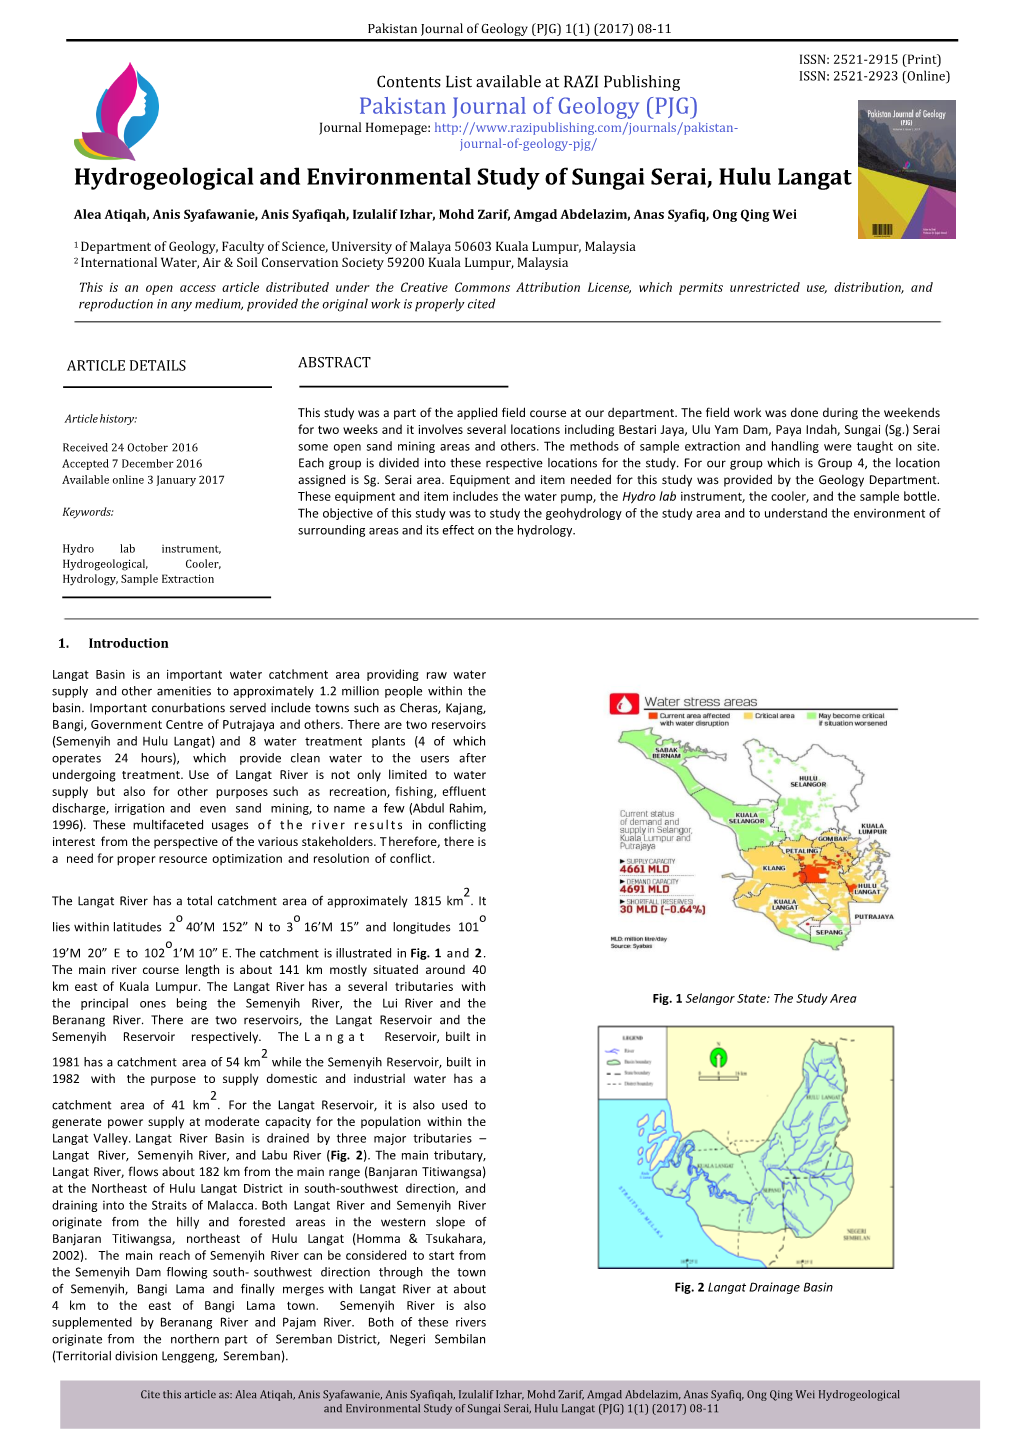 Hydrogeological and Environmental Study of Sungai Serai, Hulu Langat